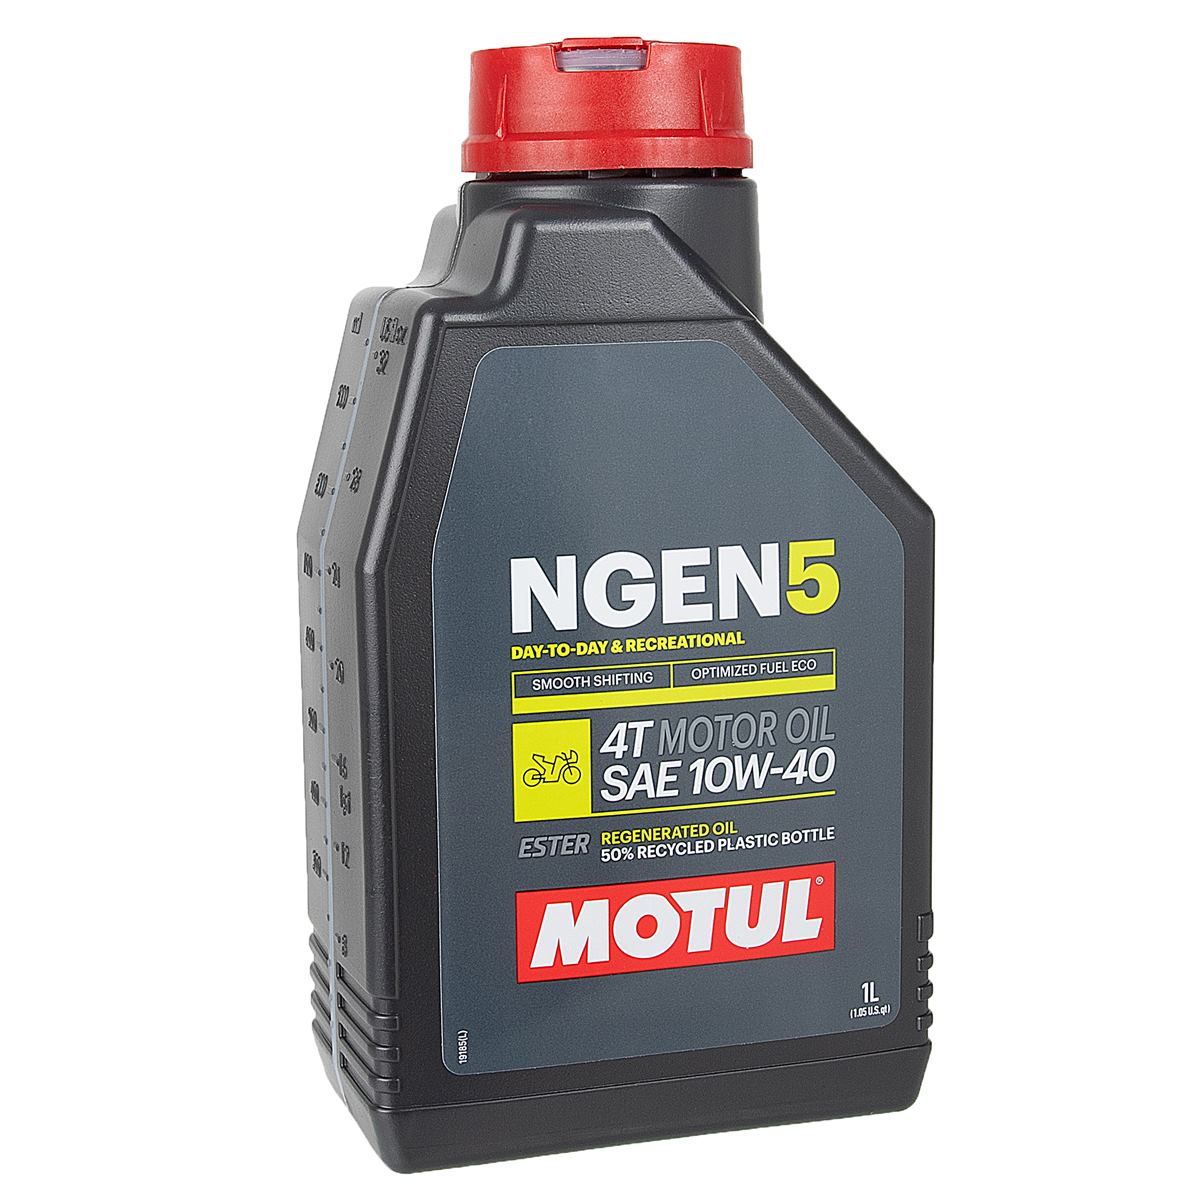 Motul Motor Oil NGEN 5 10W40, 1 Liter